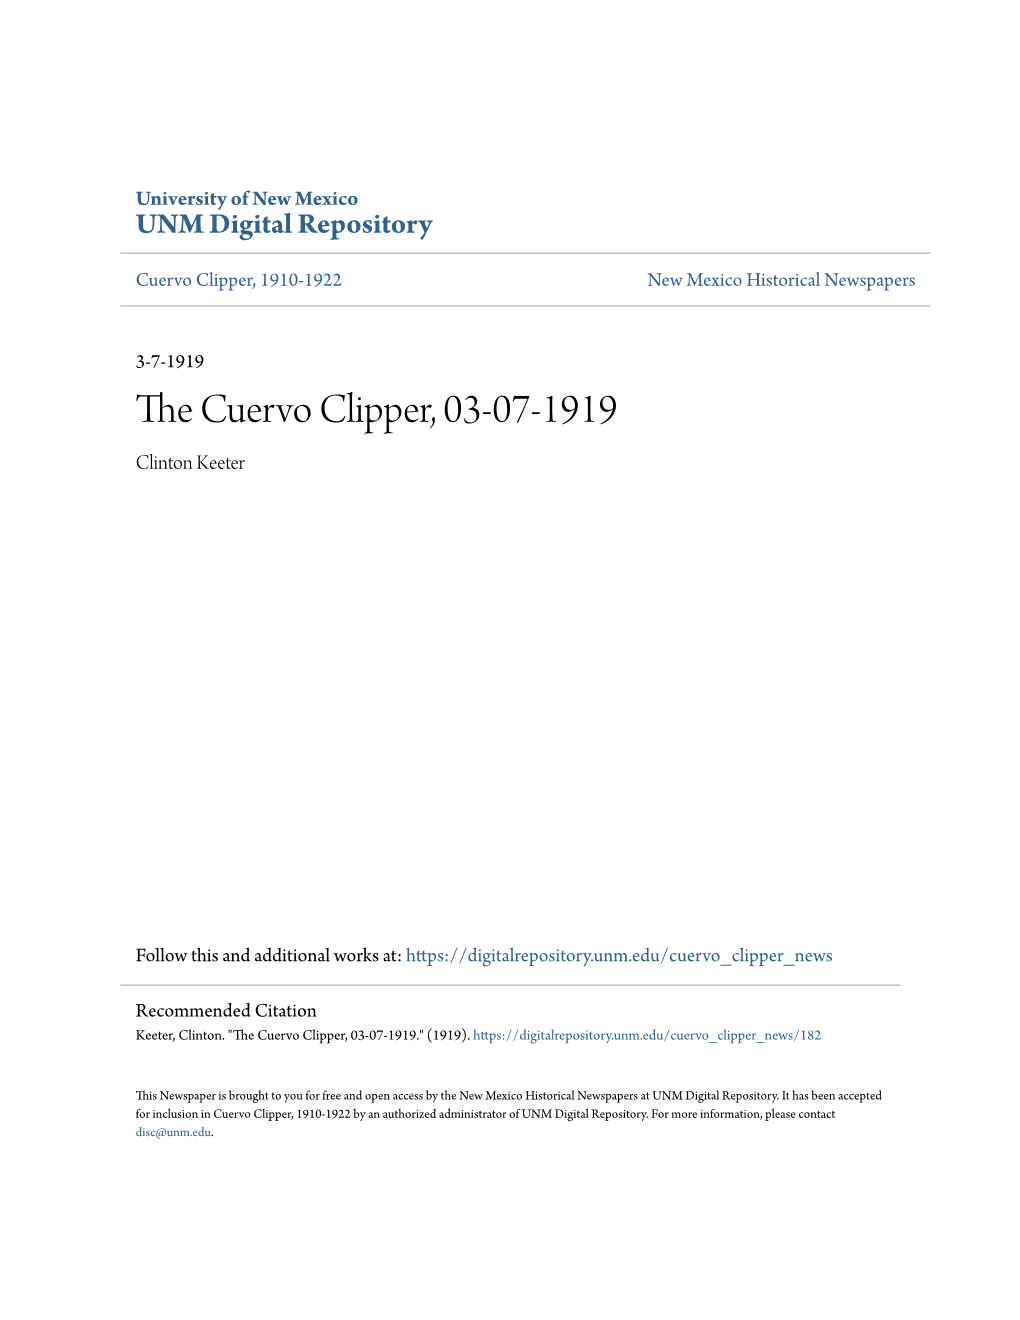 The Cuervo Clipper, 03-07-1919